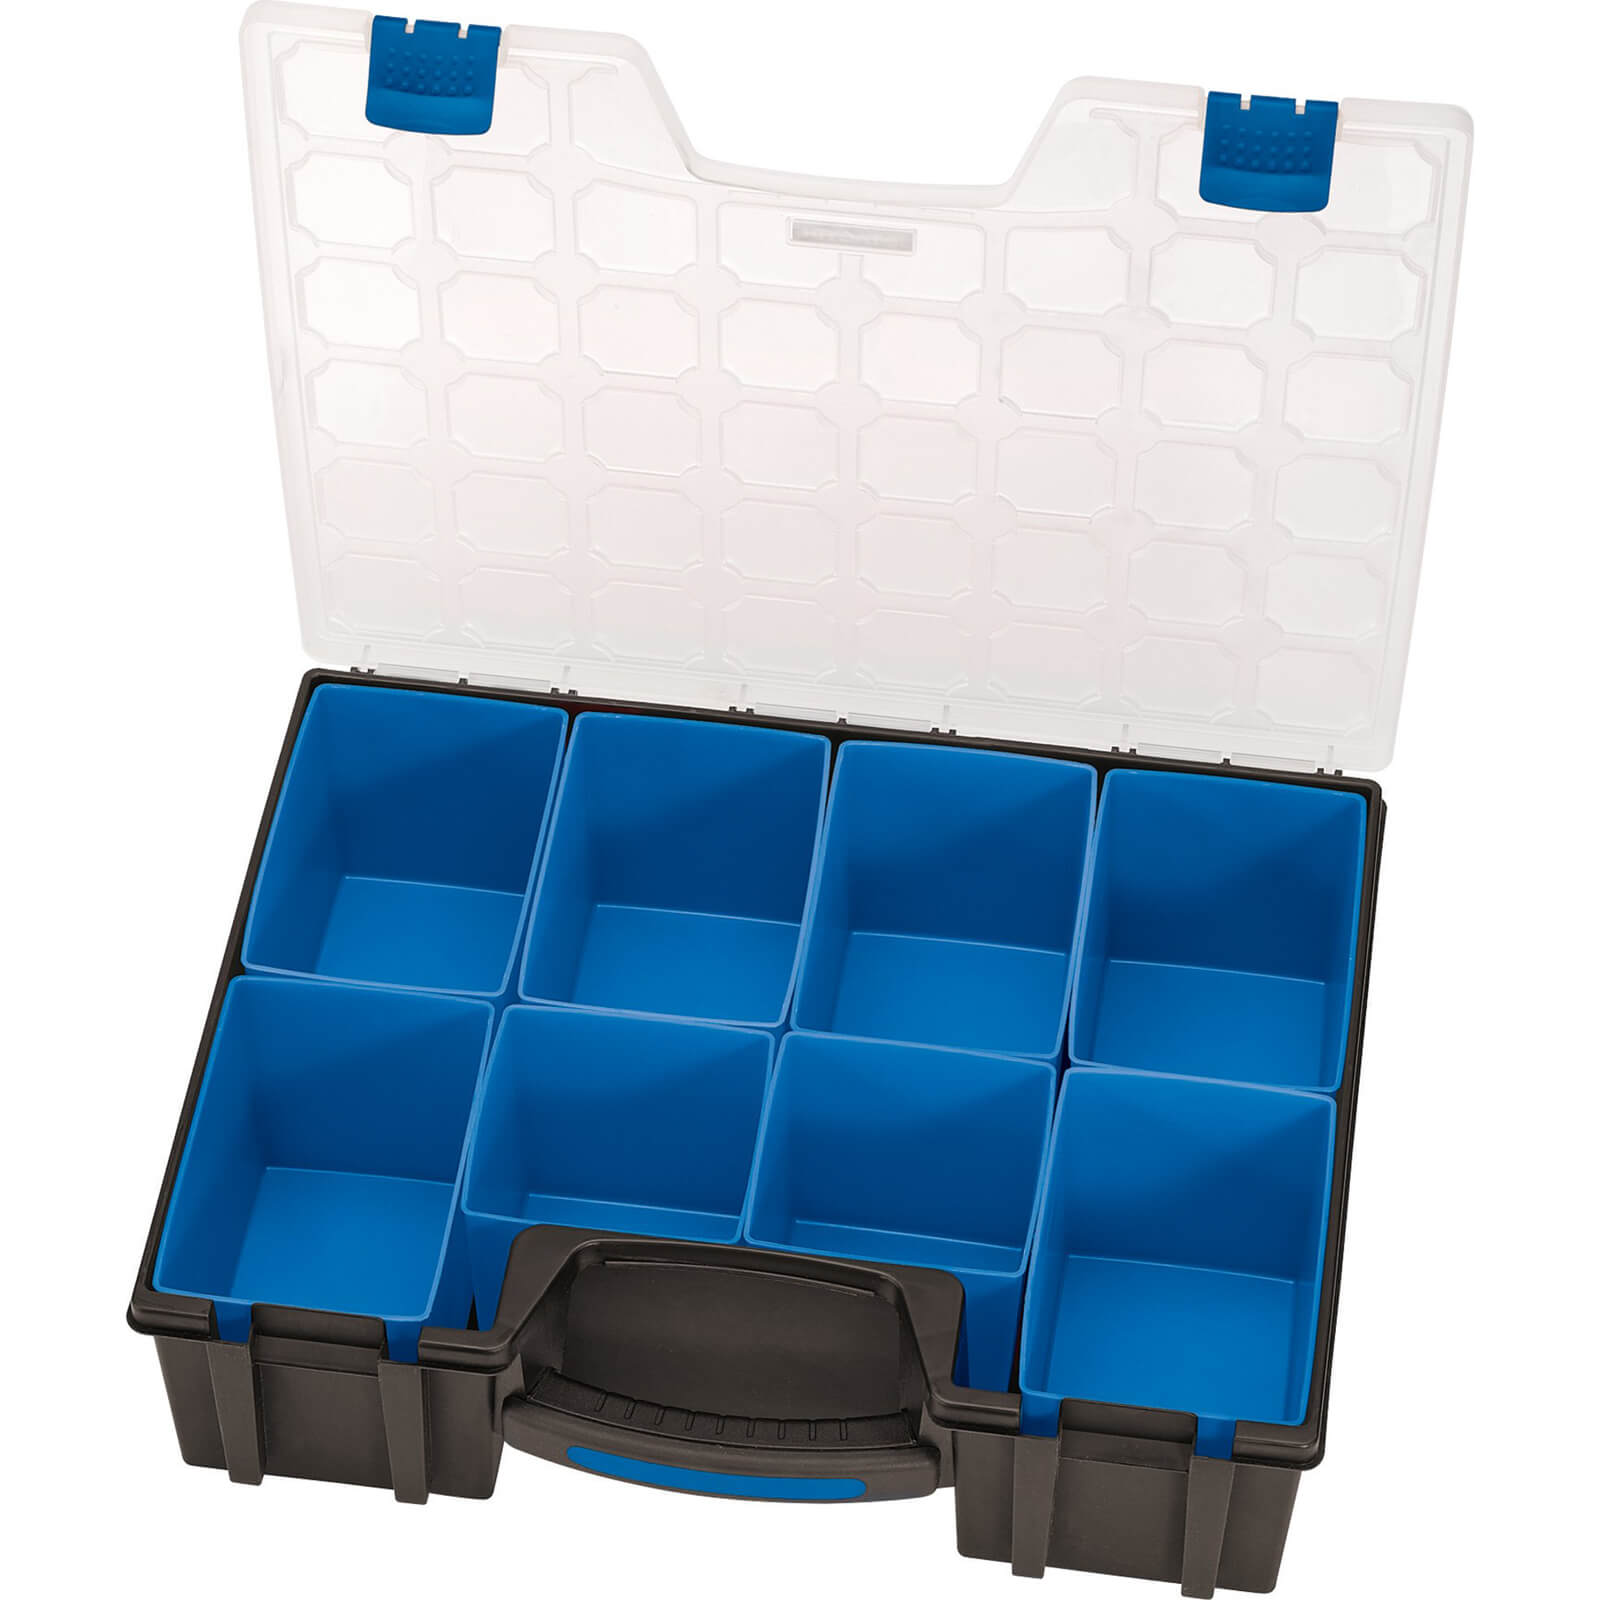 Image of Draper 8 Compartment Plastic Organiser